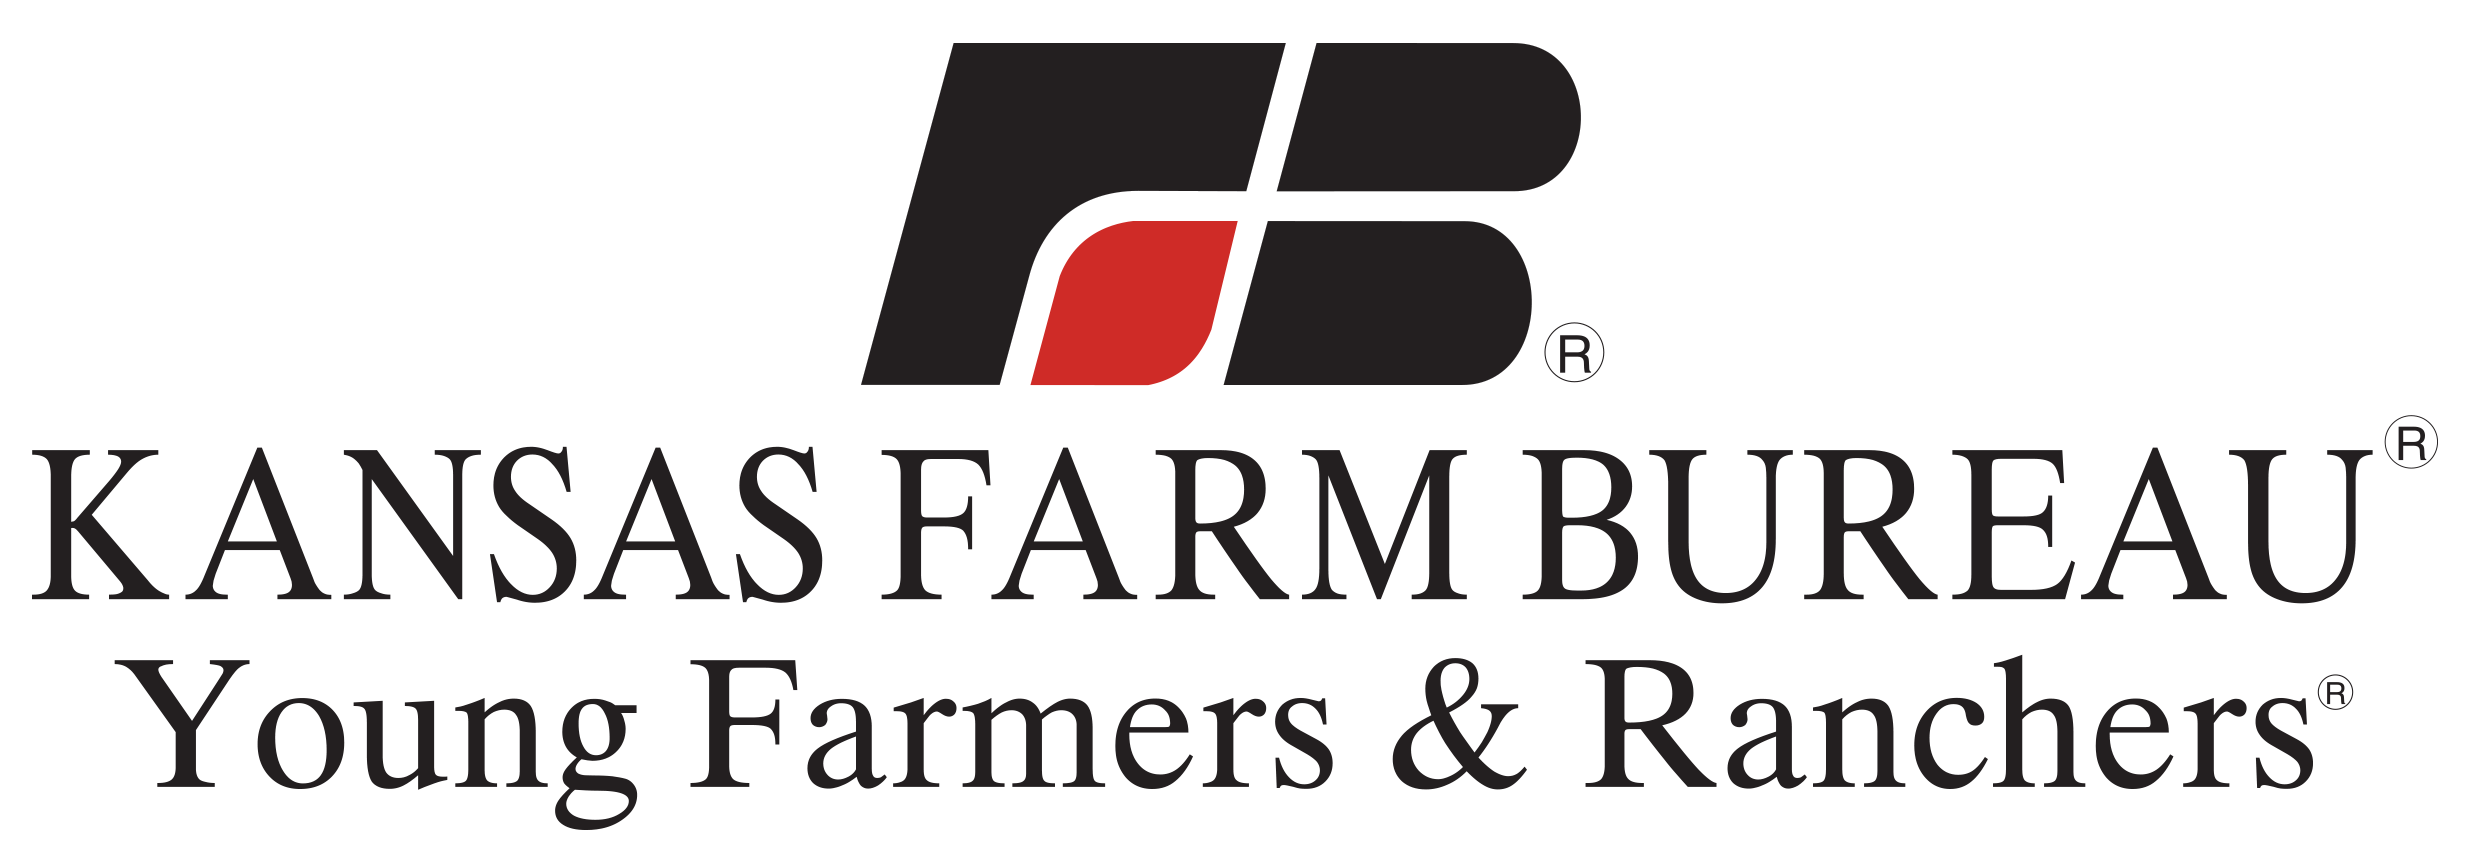 Kansas Farm Bureau Young Farmers and Rachers Logo